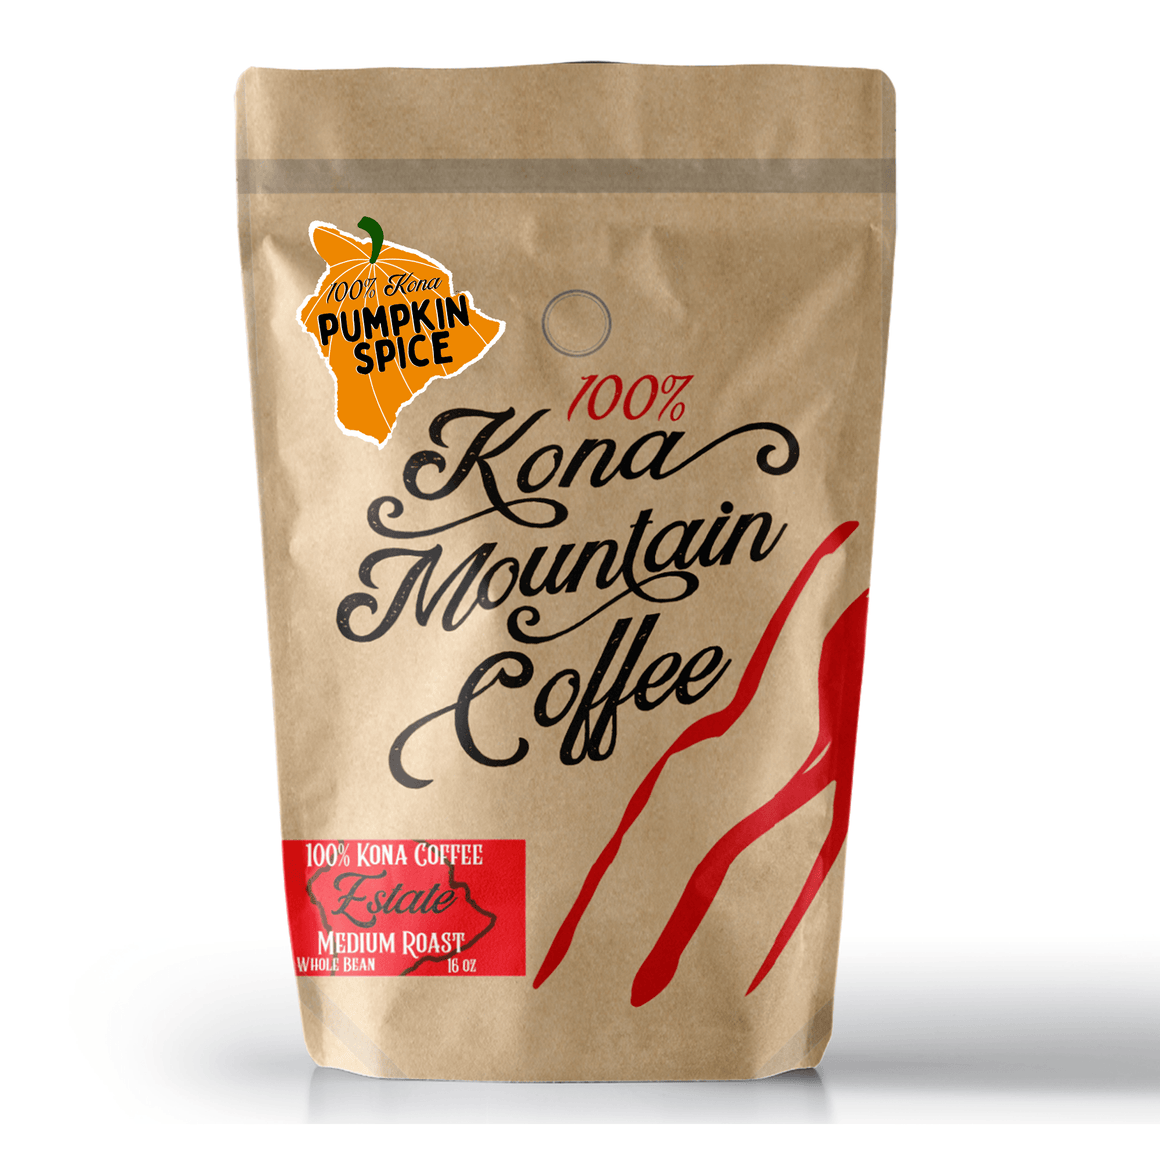 100% Kona Pumpkin Spice Coffee - Kona Mountain Coffee